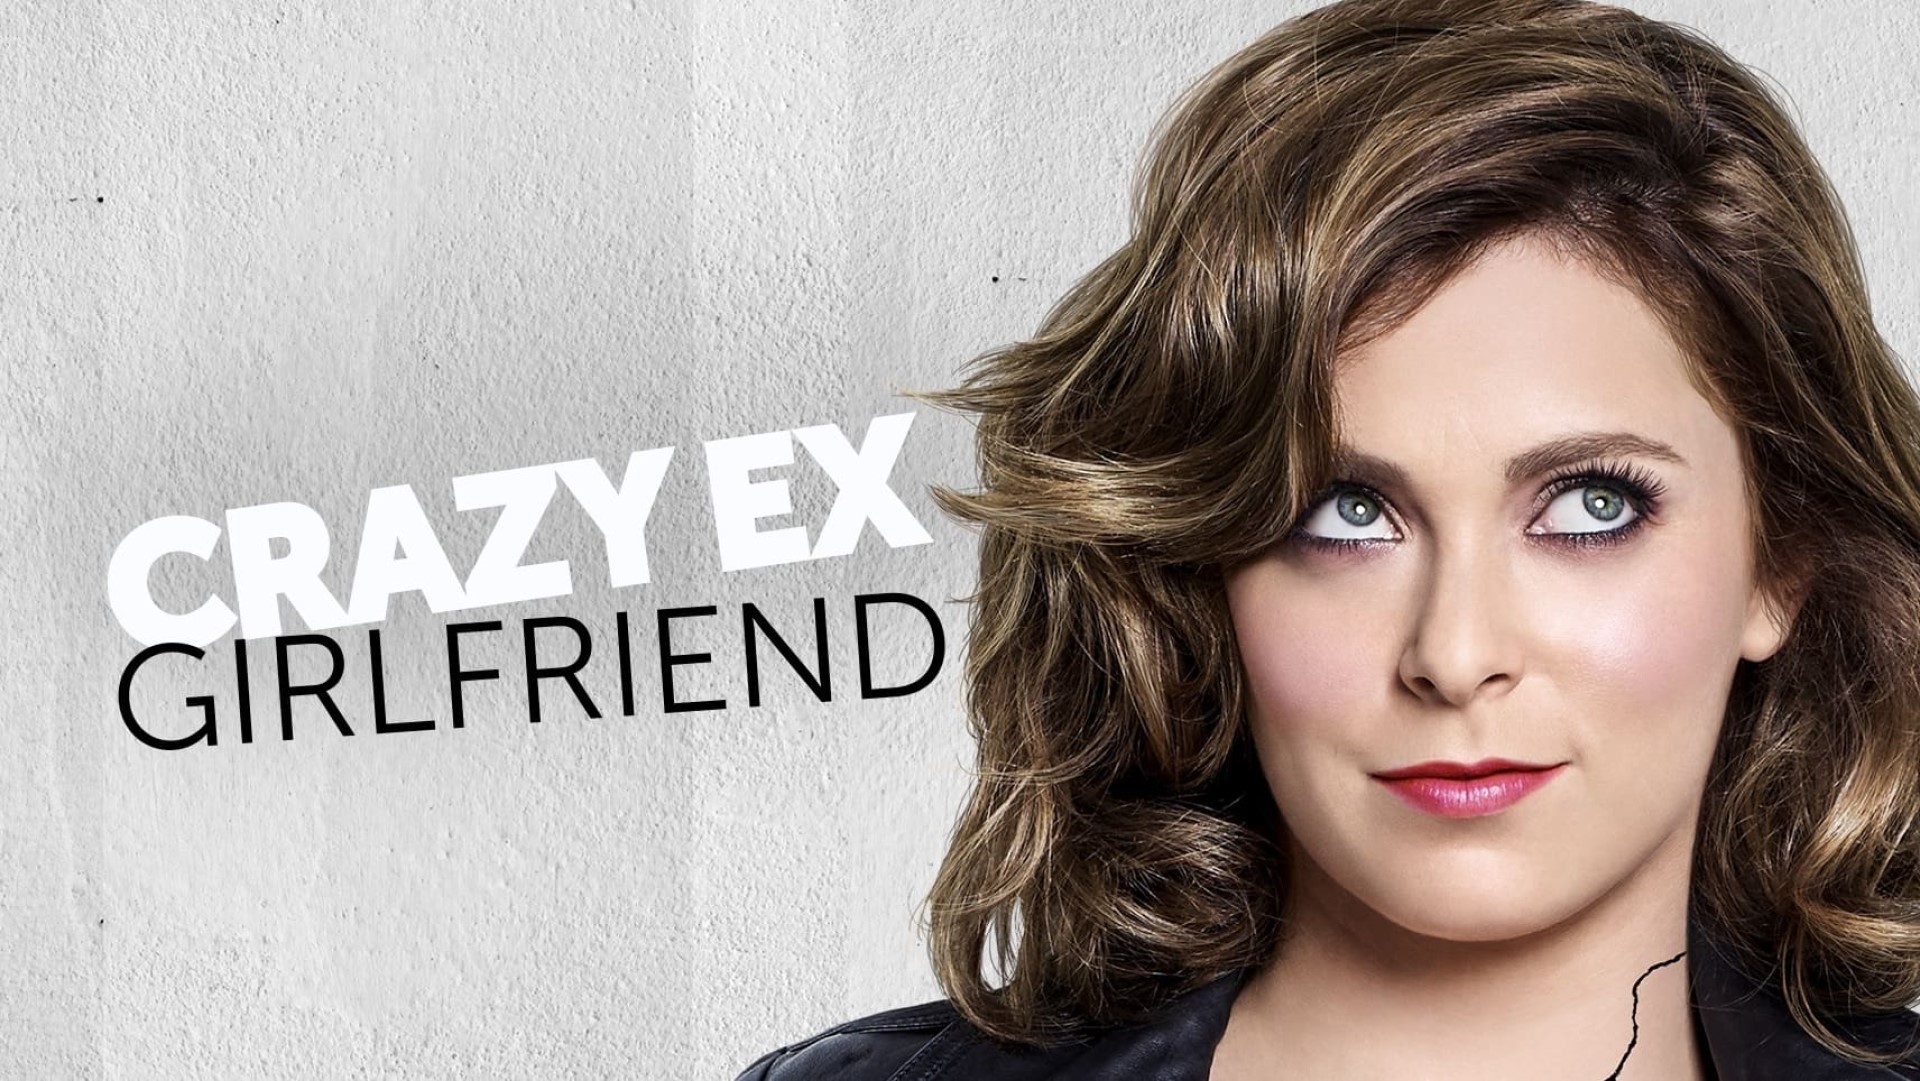 Tv Show Crazy Ex Girlfriend 4k Ultra Hd Wallpaper 6104